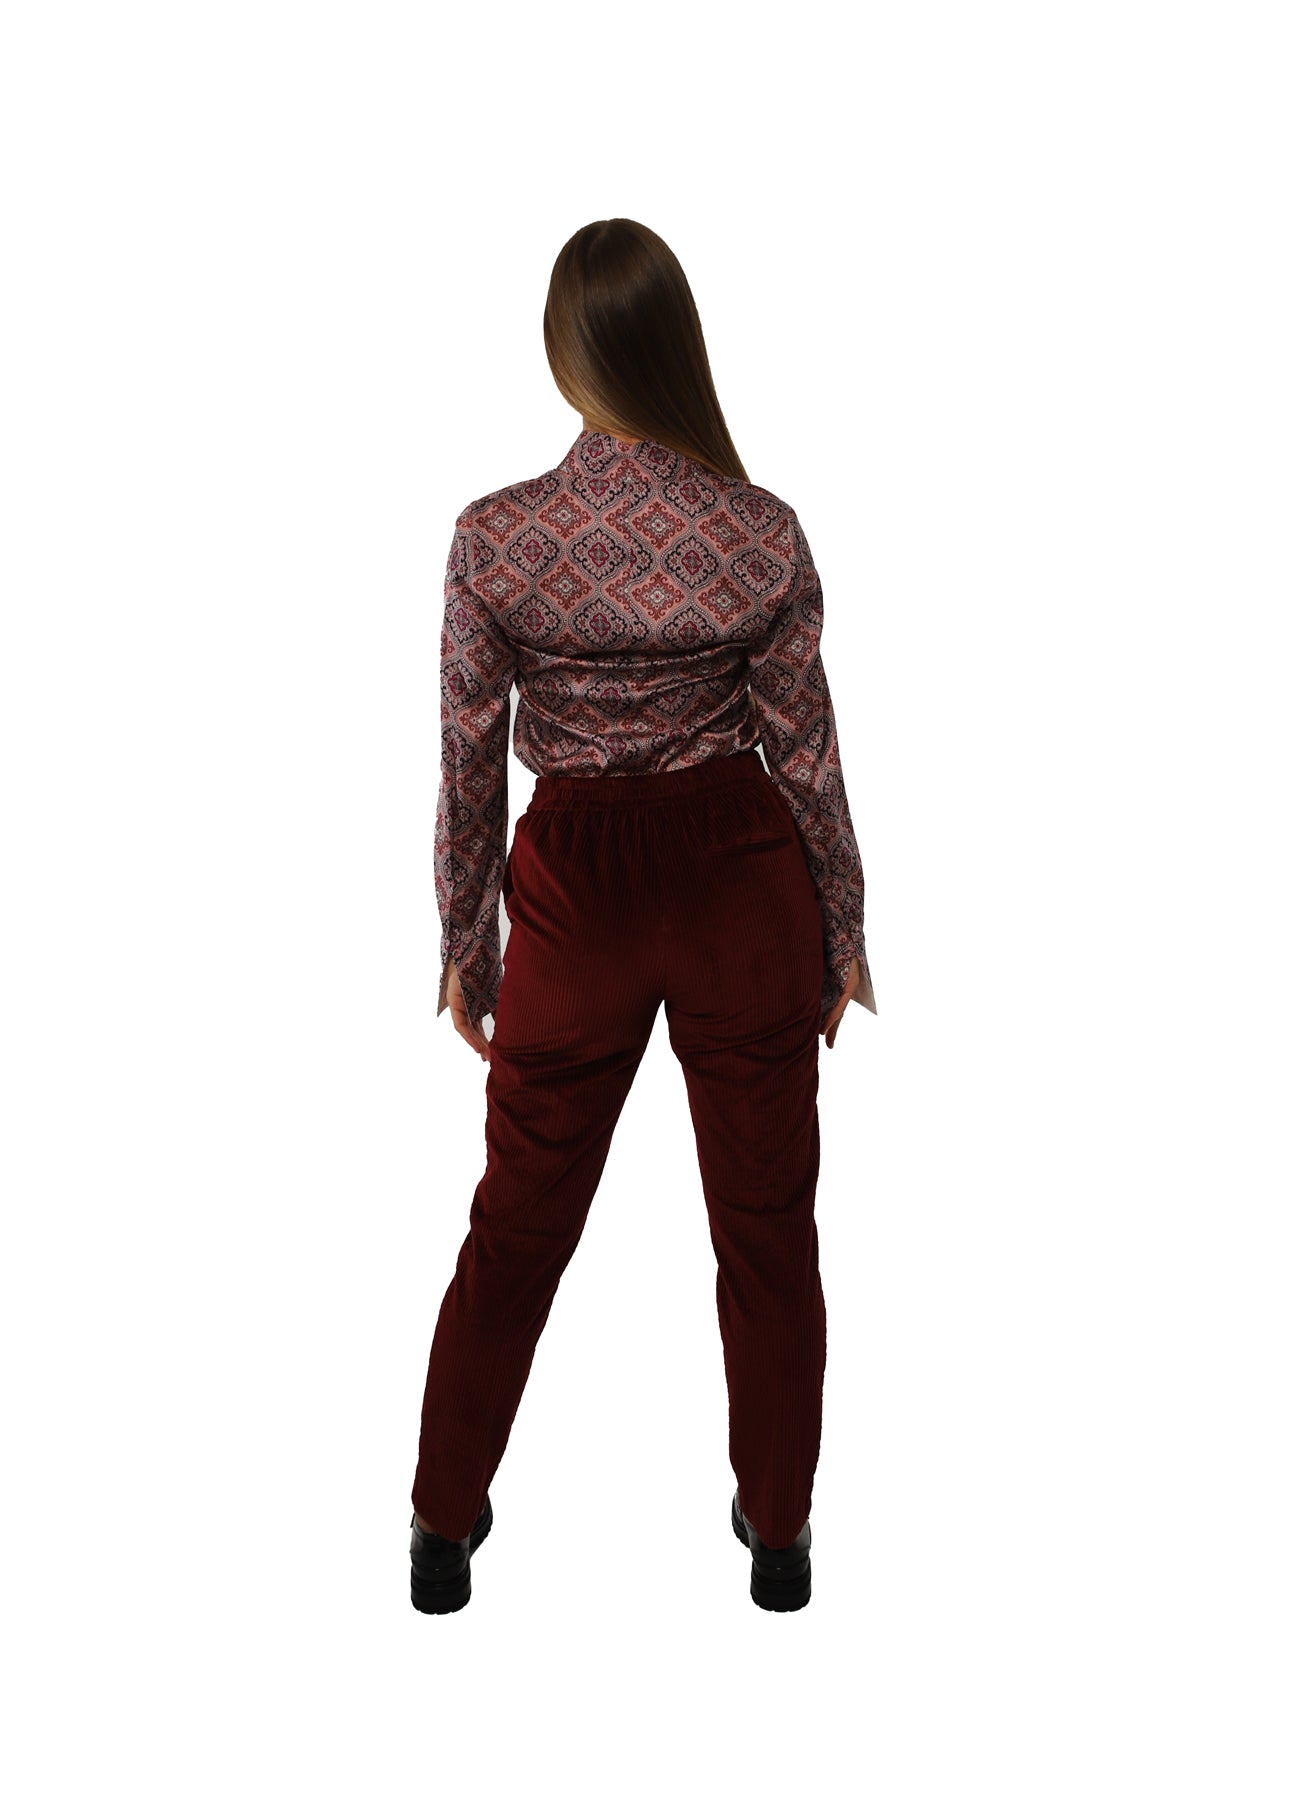 Women's trousers in stretch rocker velvet